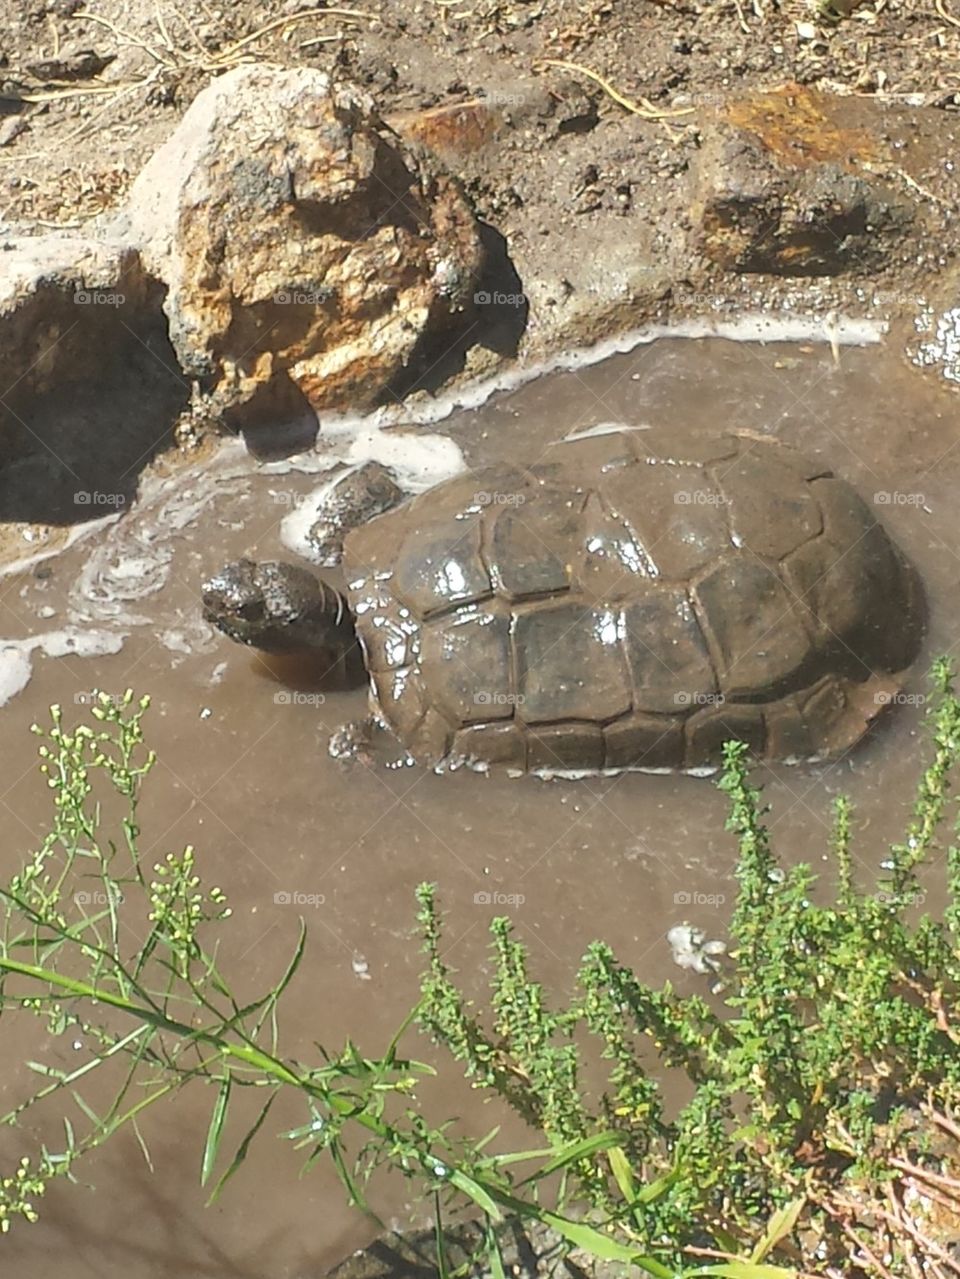 desert tortoise bathes